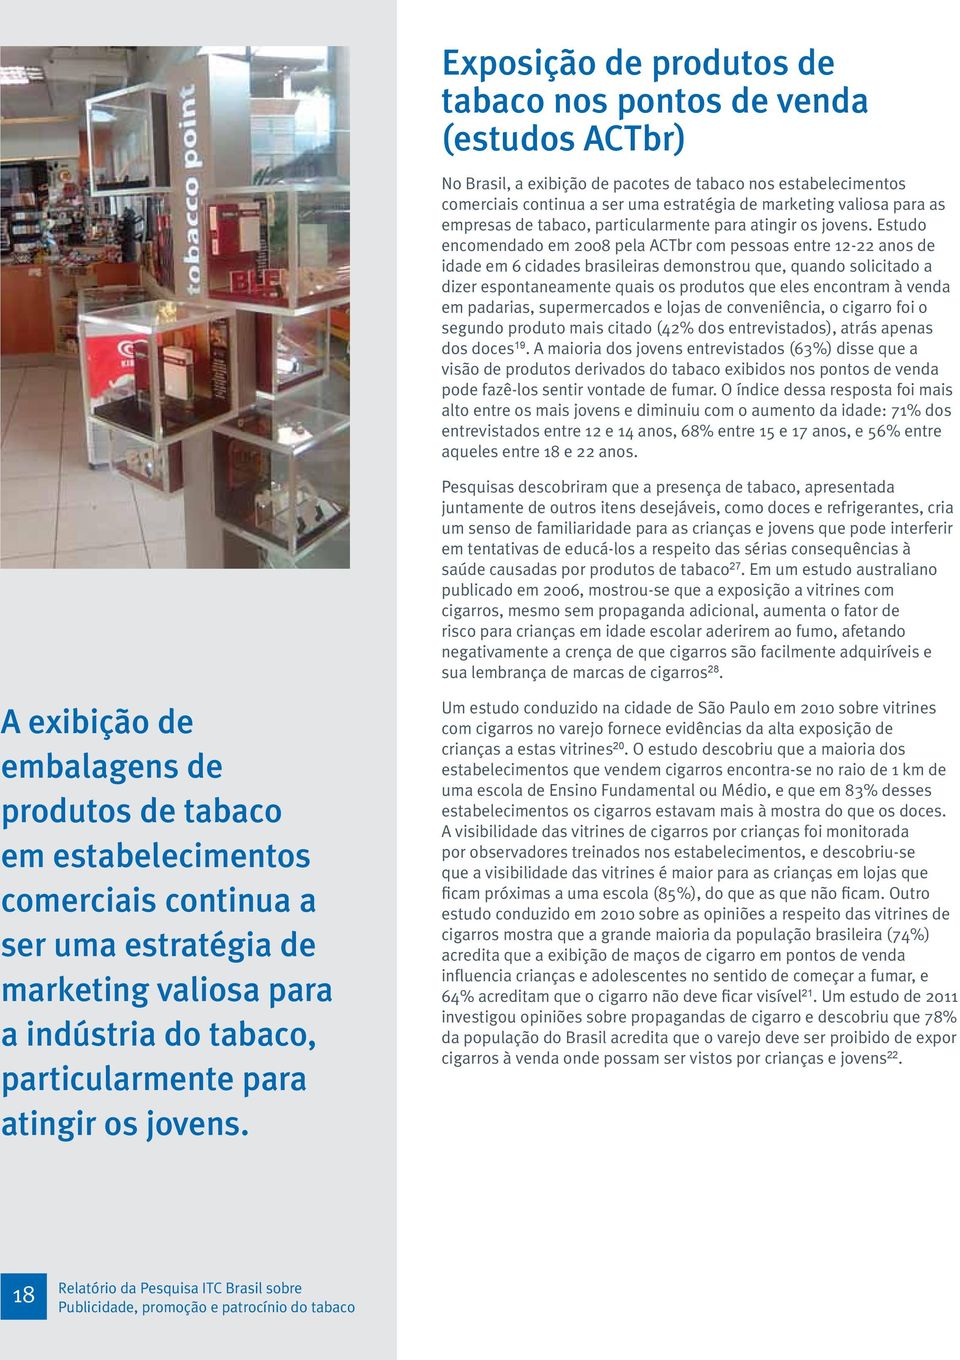 Estudo encomendado em 2008 pela ACTbr com pessoas entre 12-22 anos de idade em 6 cidades brasileiras demonstrou que, quando solicitado a dizer espontaneamente quais os produtos que eles encontram à